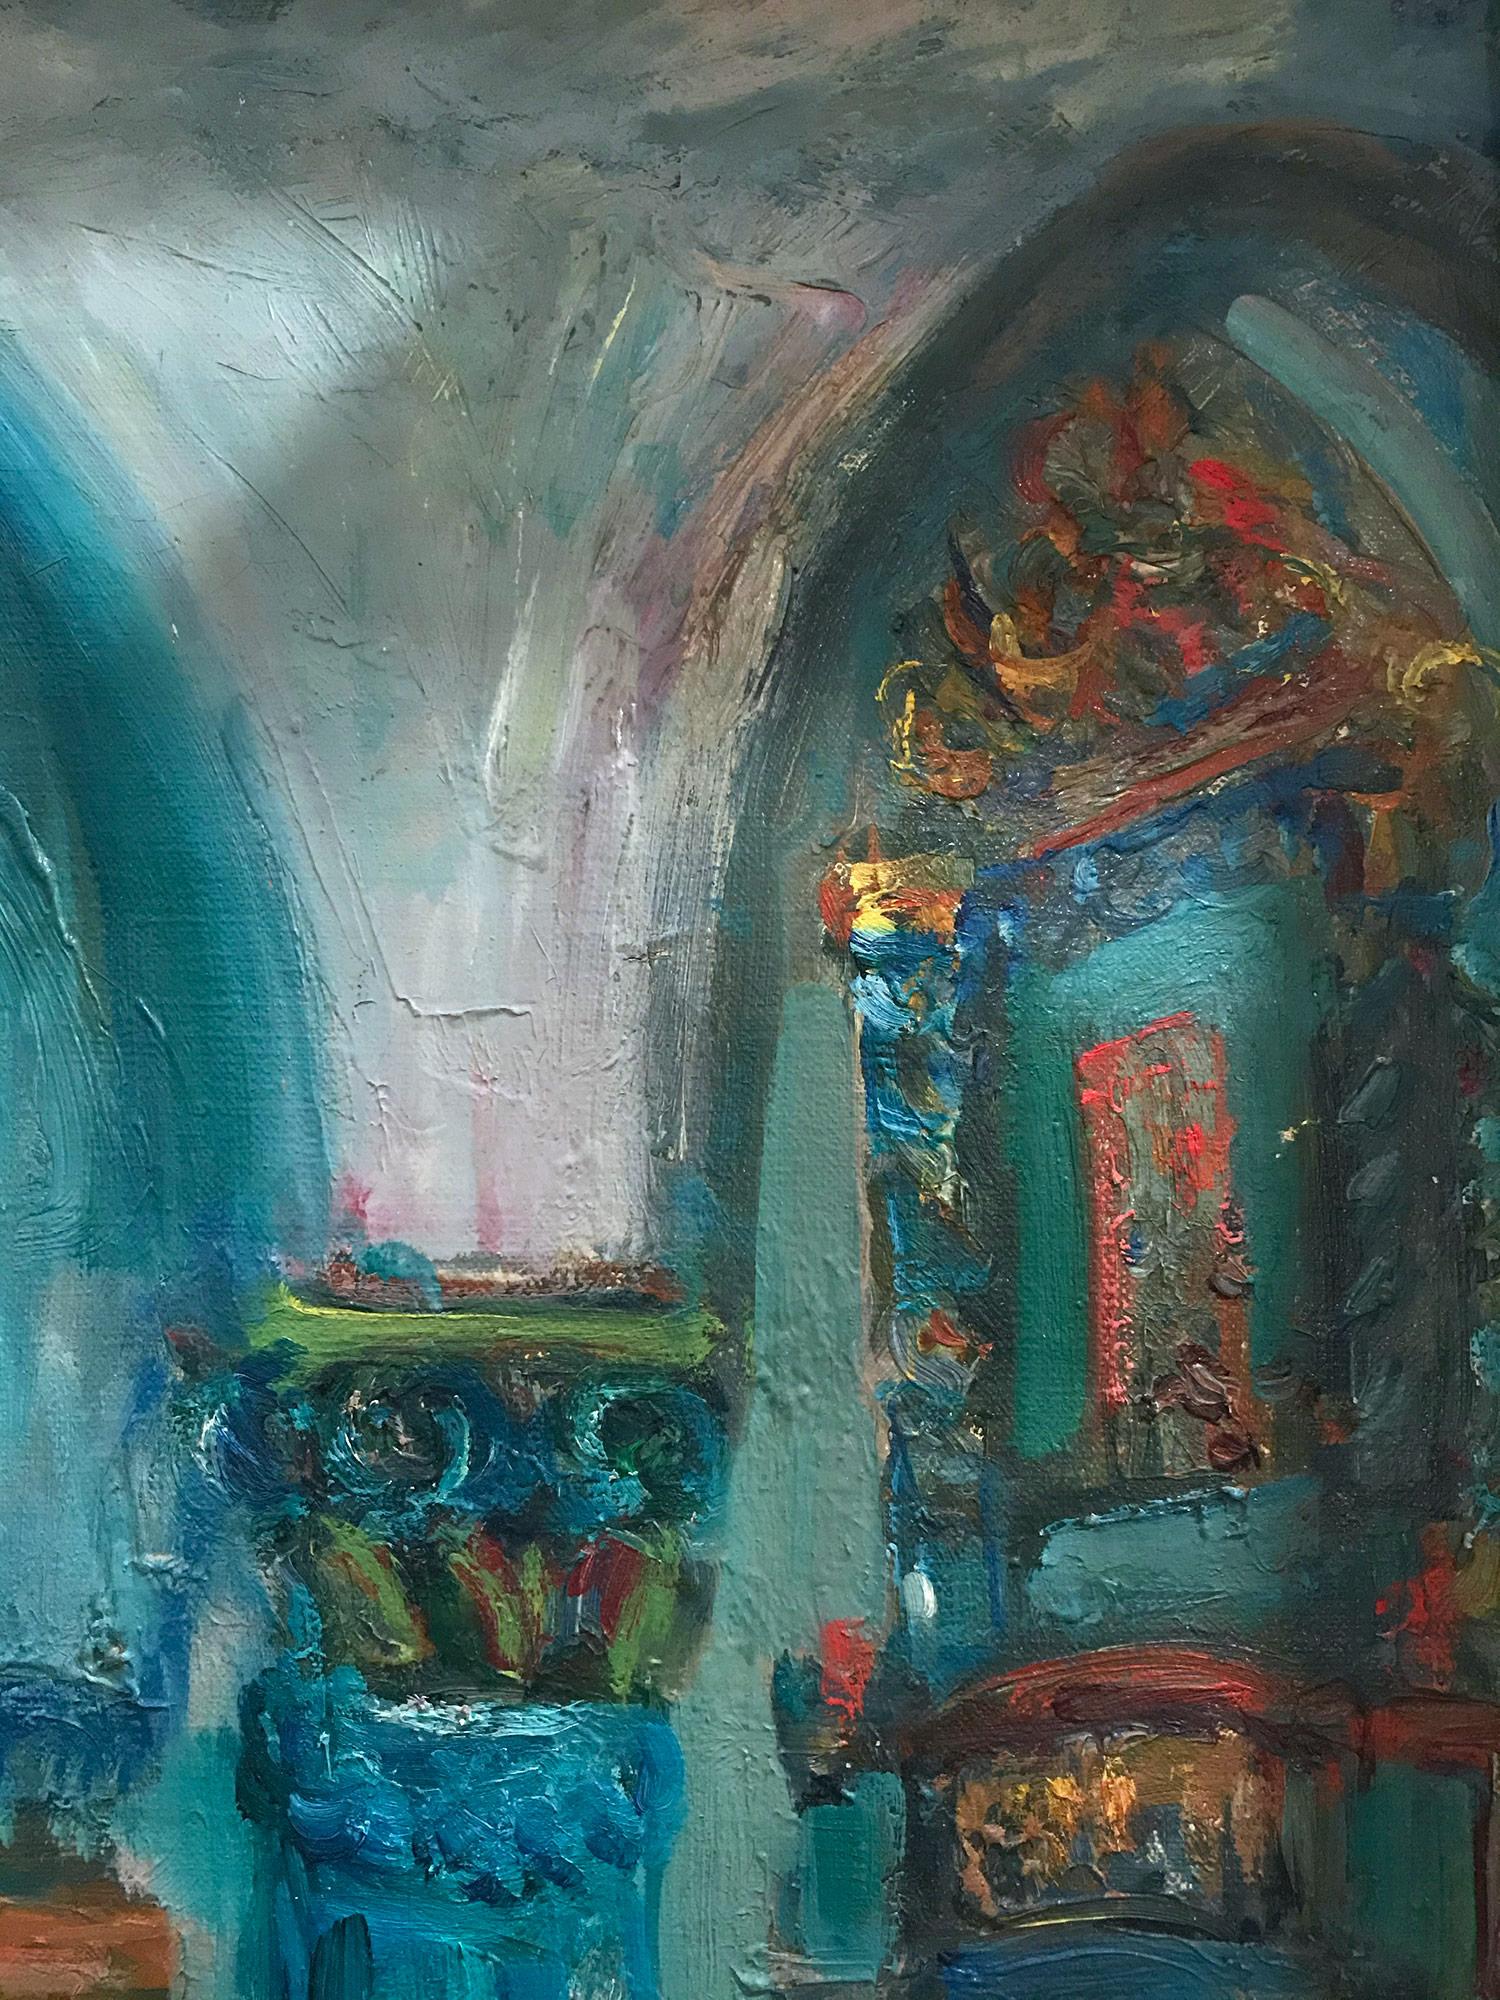 Cette remarquable peinture à l'huile représente un personnage religieux assis dans une synagogue aux colonnes décorées et aux arcs entrecoupés. Les couleurs vives et les coups de pinceau rapides rendent cette pièce si attrayante et désirable.